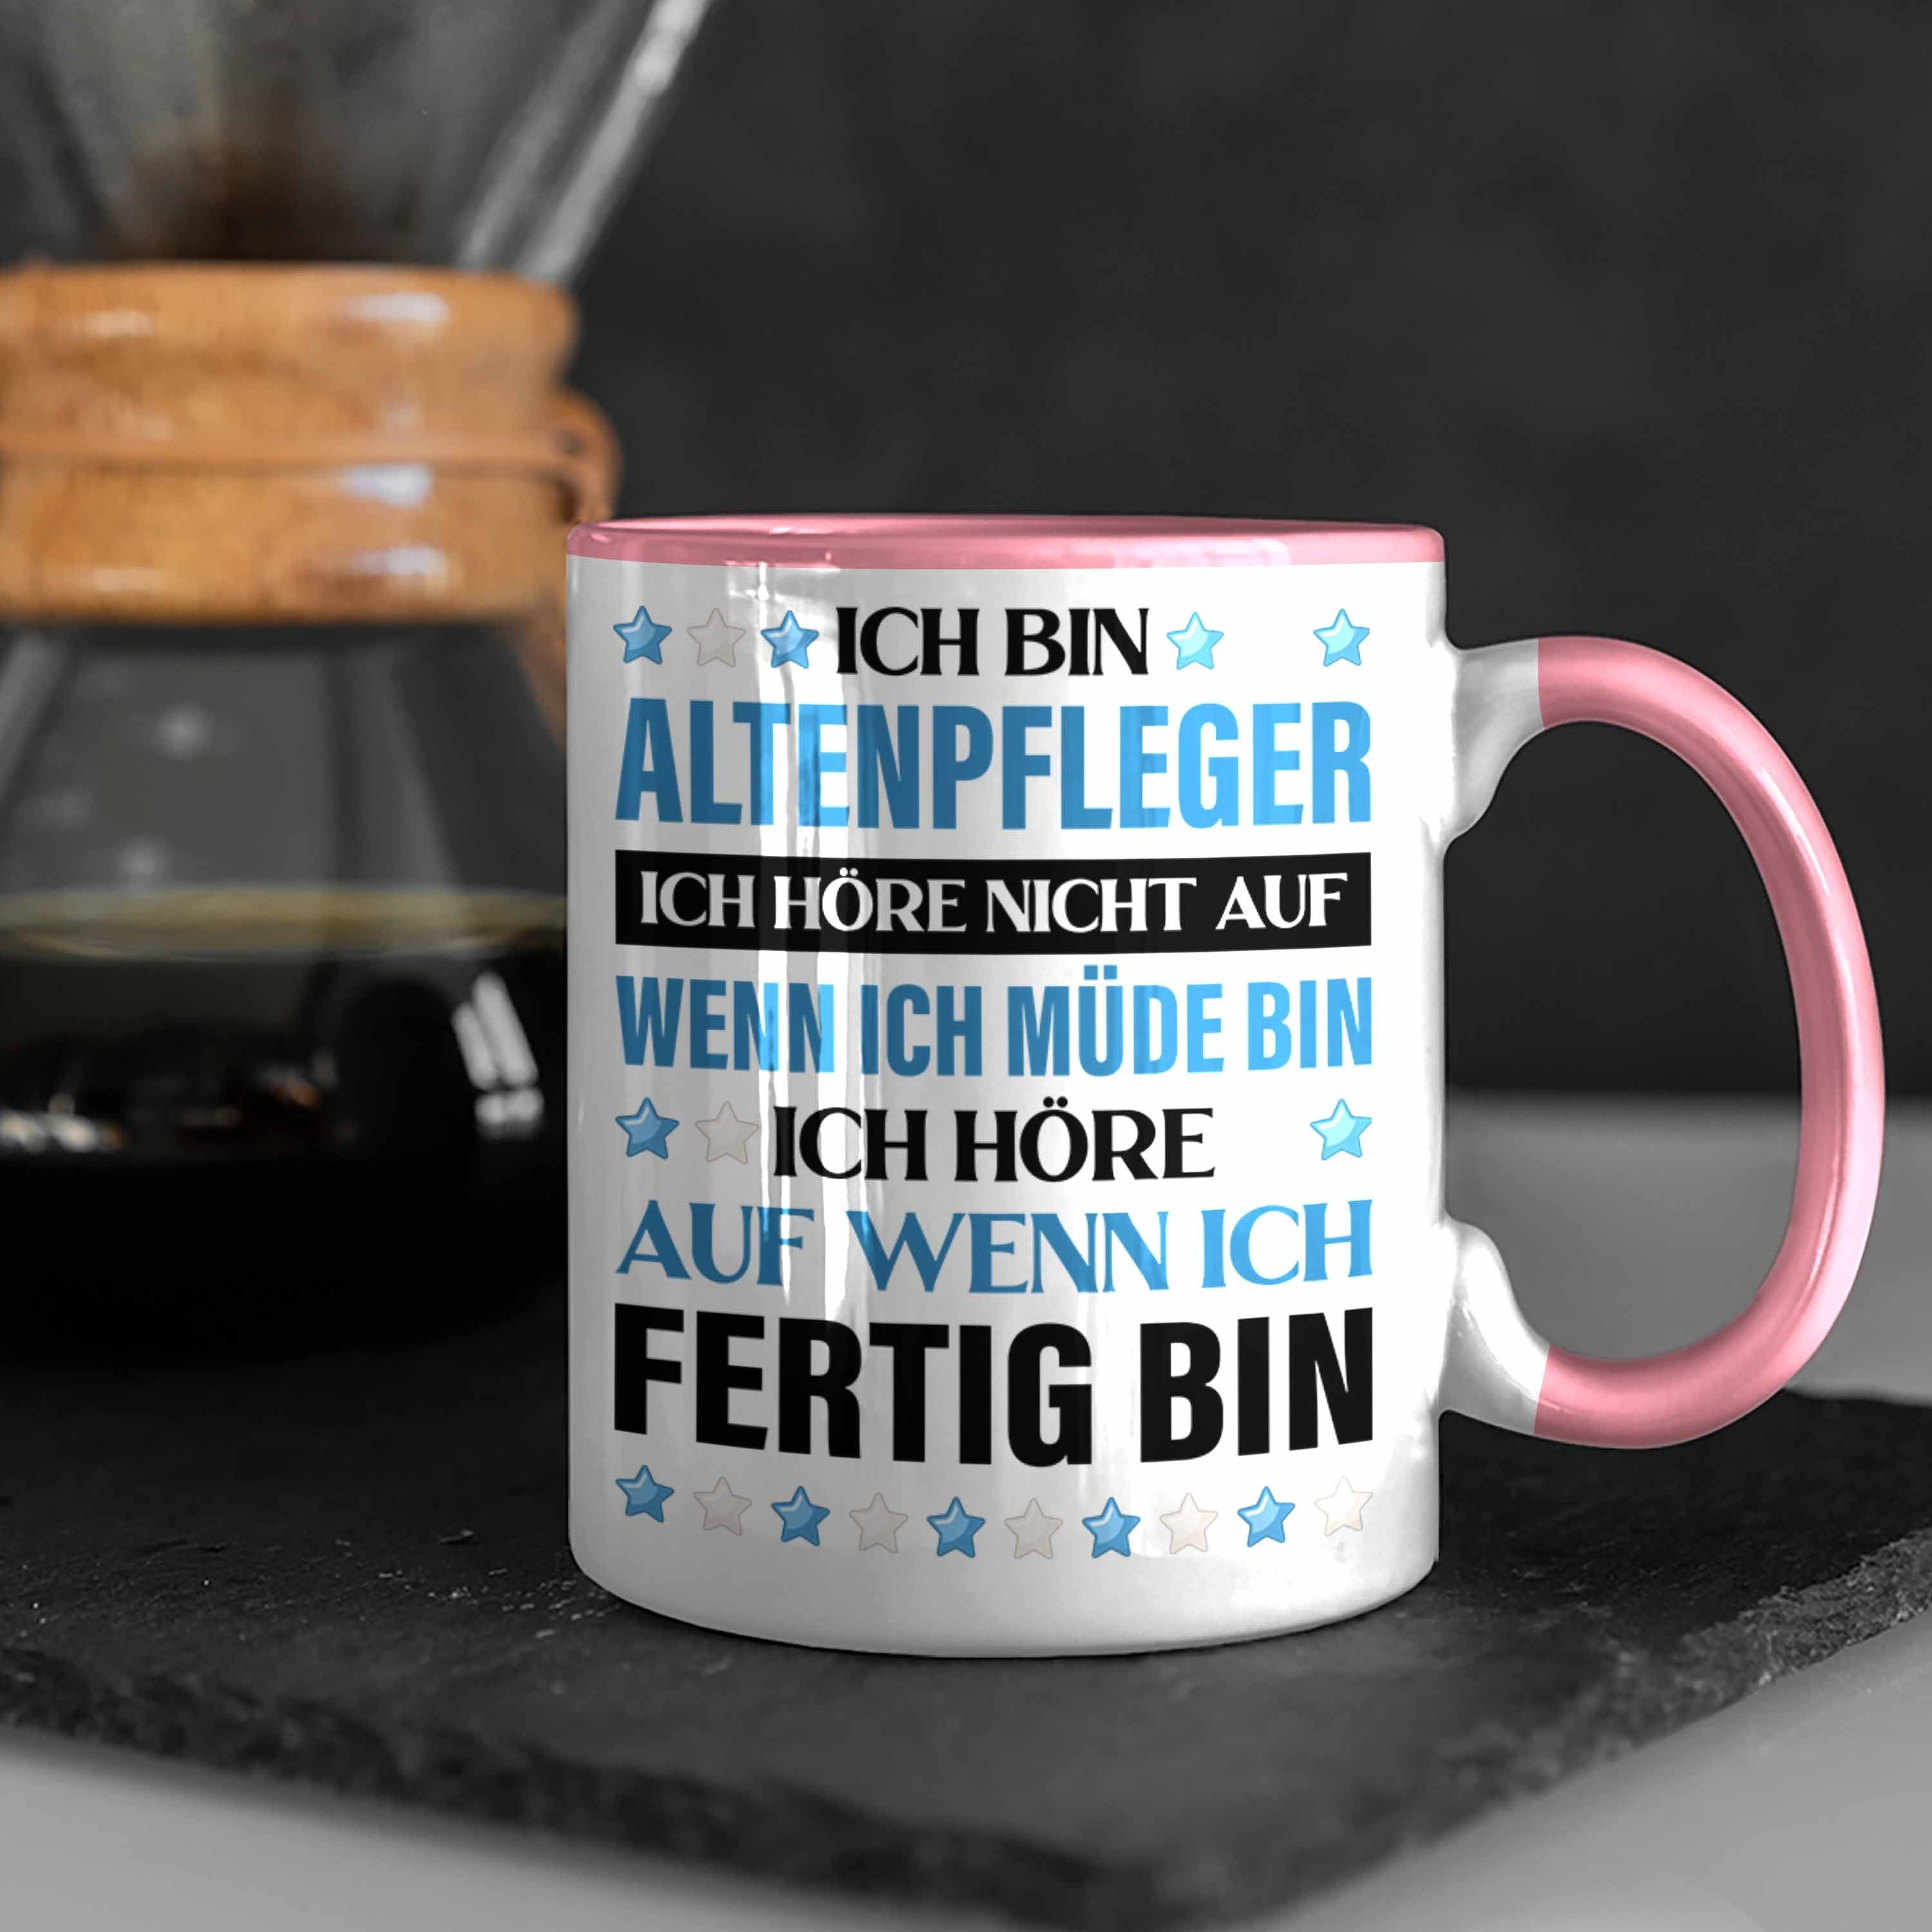 Trendation Tasse Trendation - Geschenke Zubehör Geschenkidee Rosa Altenpfleger Pfleger Tasse Kaffeetasse Lustig